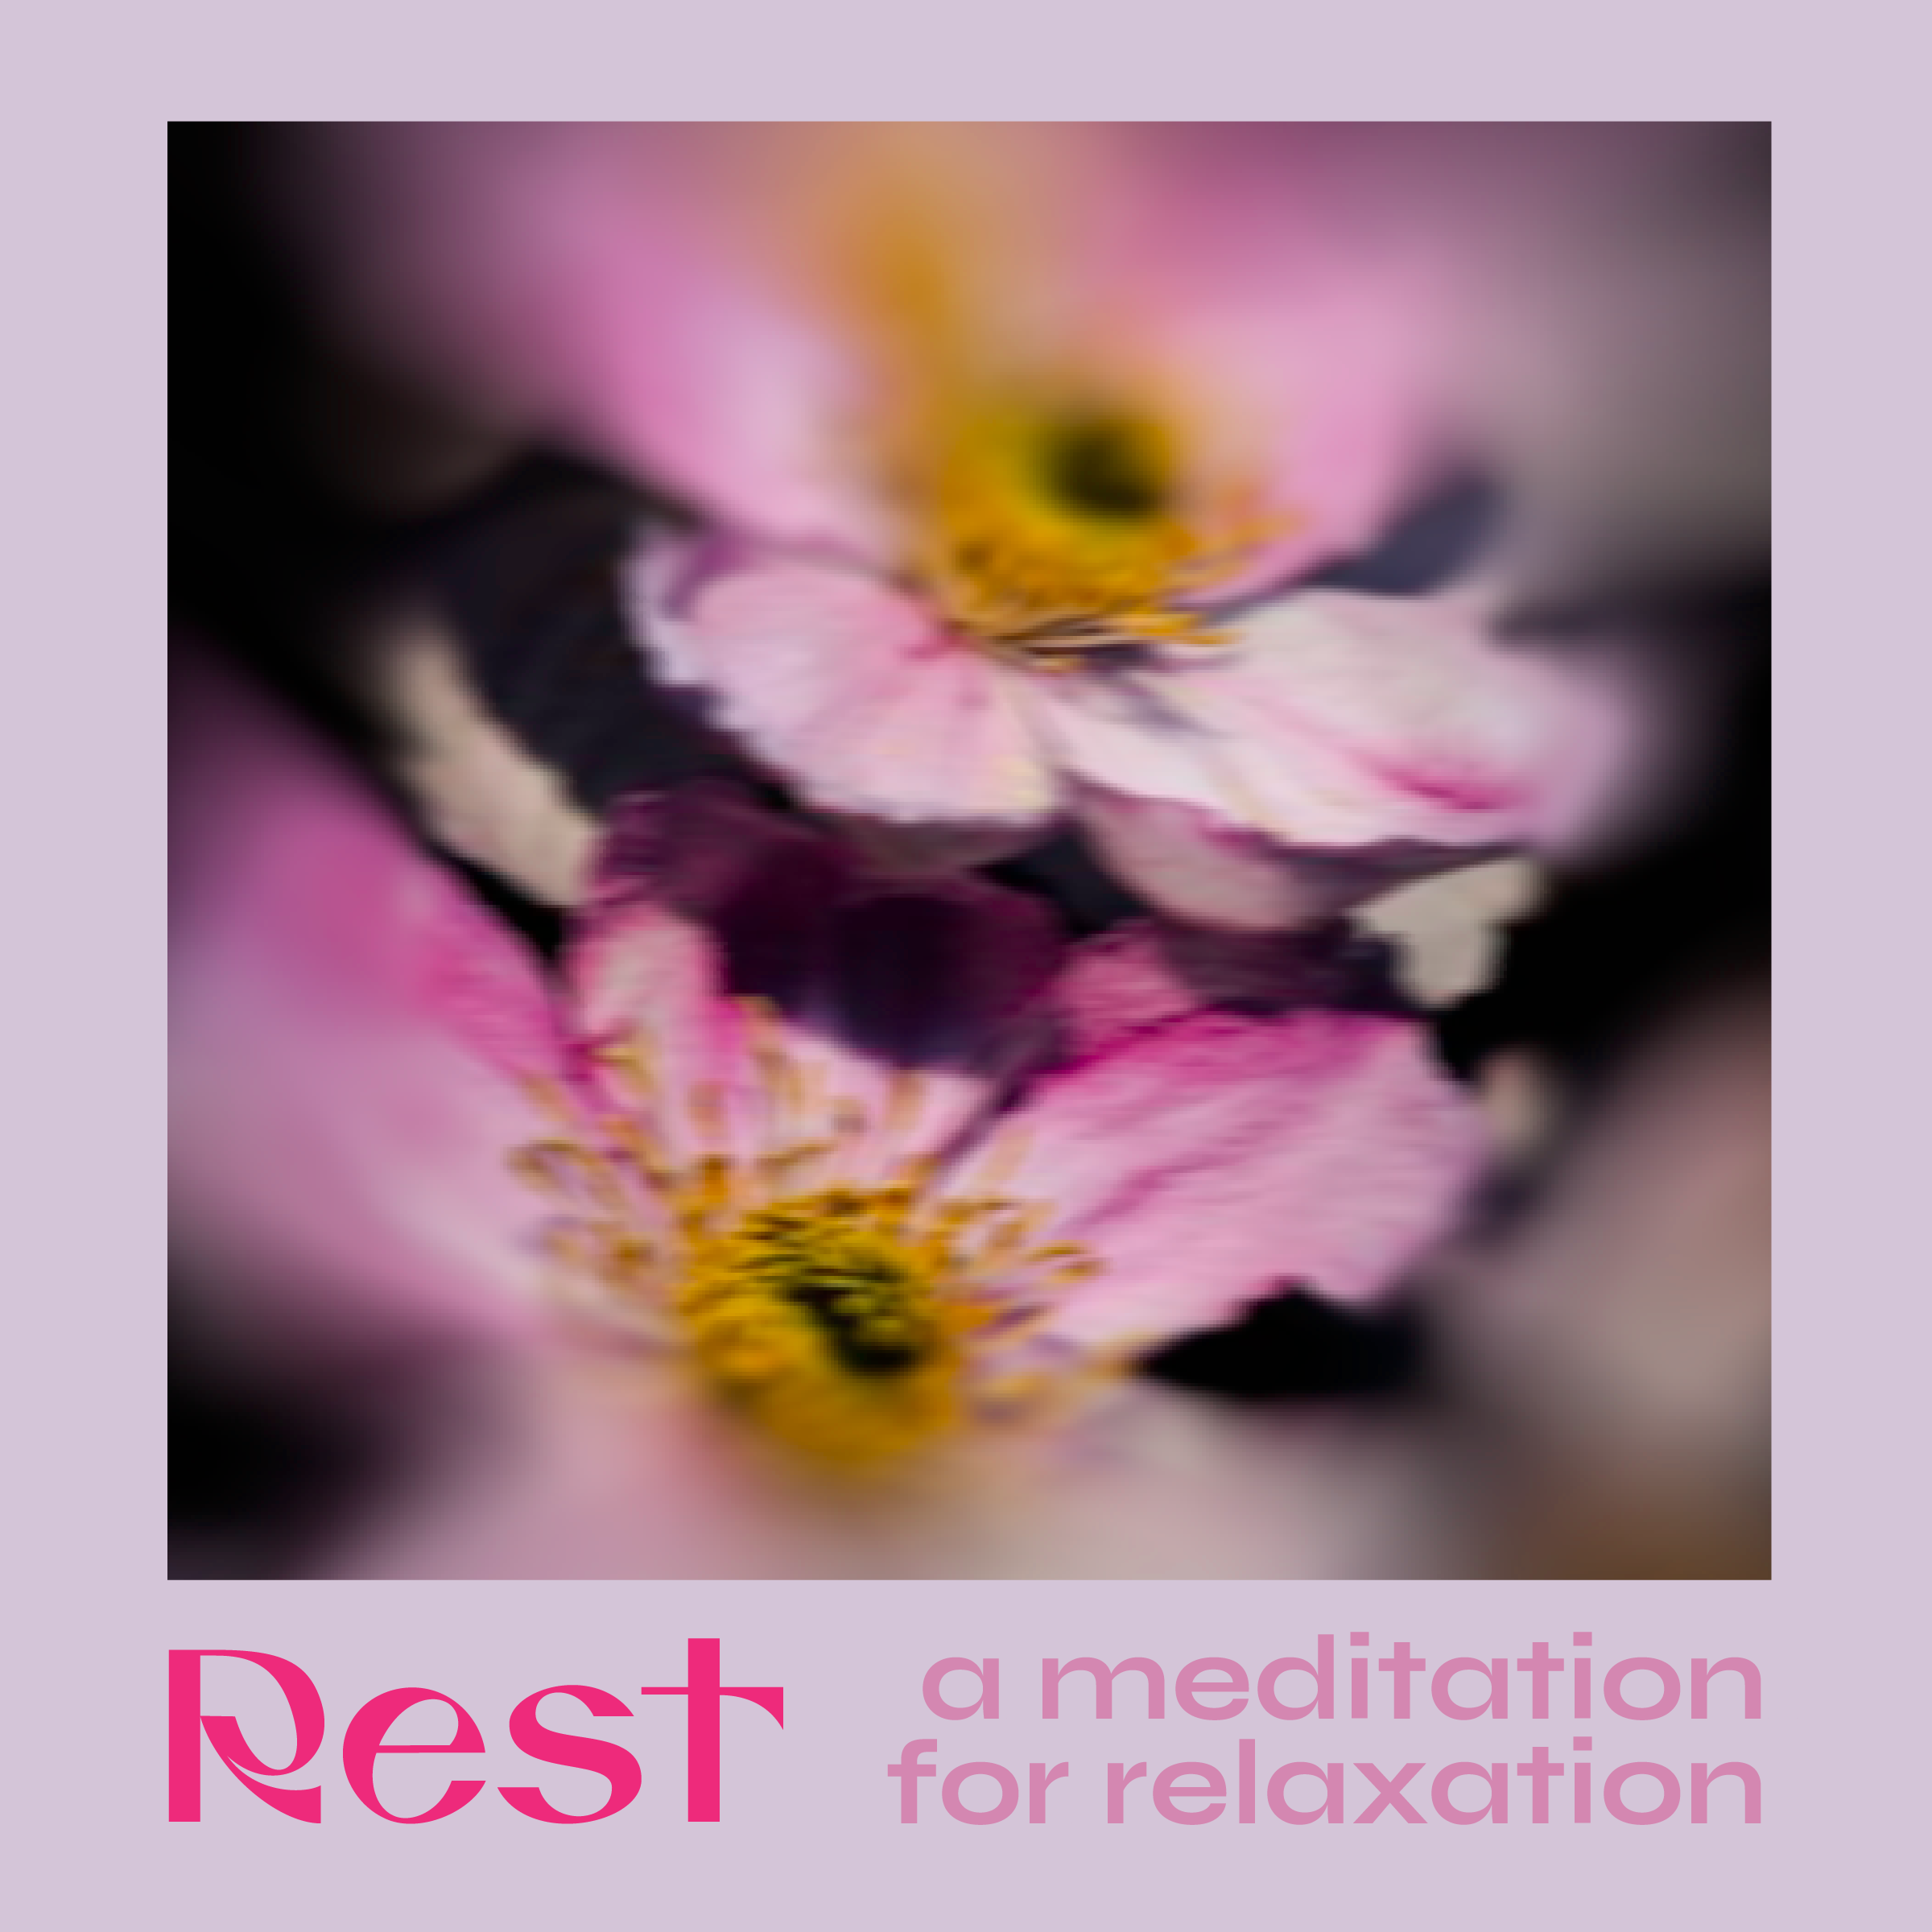 rest_meditation-01.png